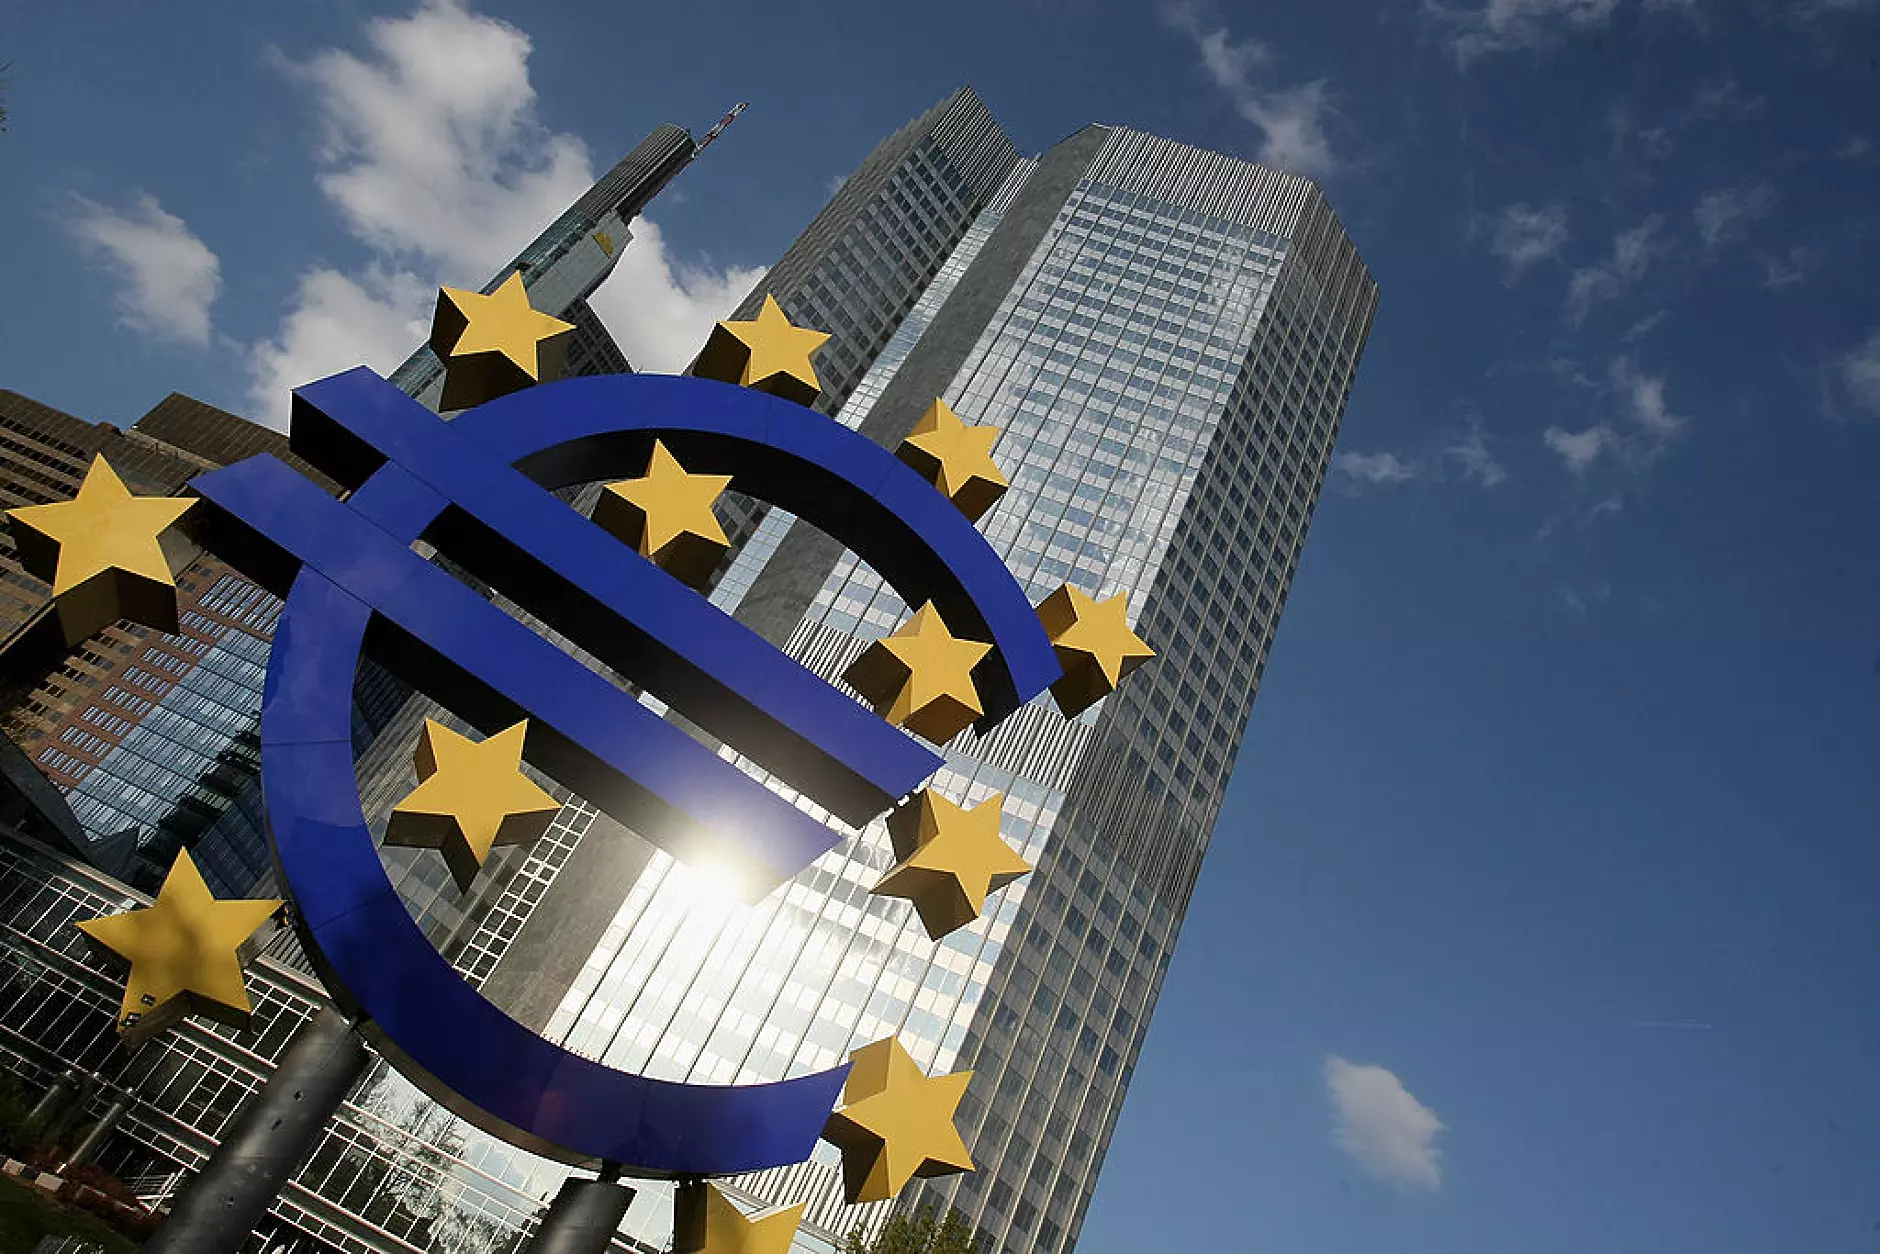 ЕЦБ ще приключи проучванията за цифрово евро през октомври 2023 г.